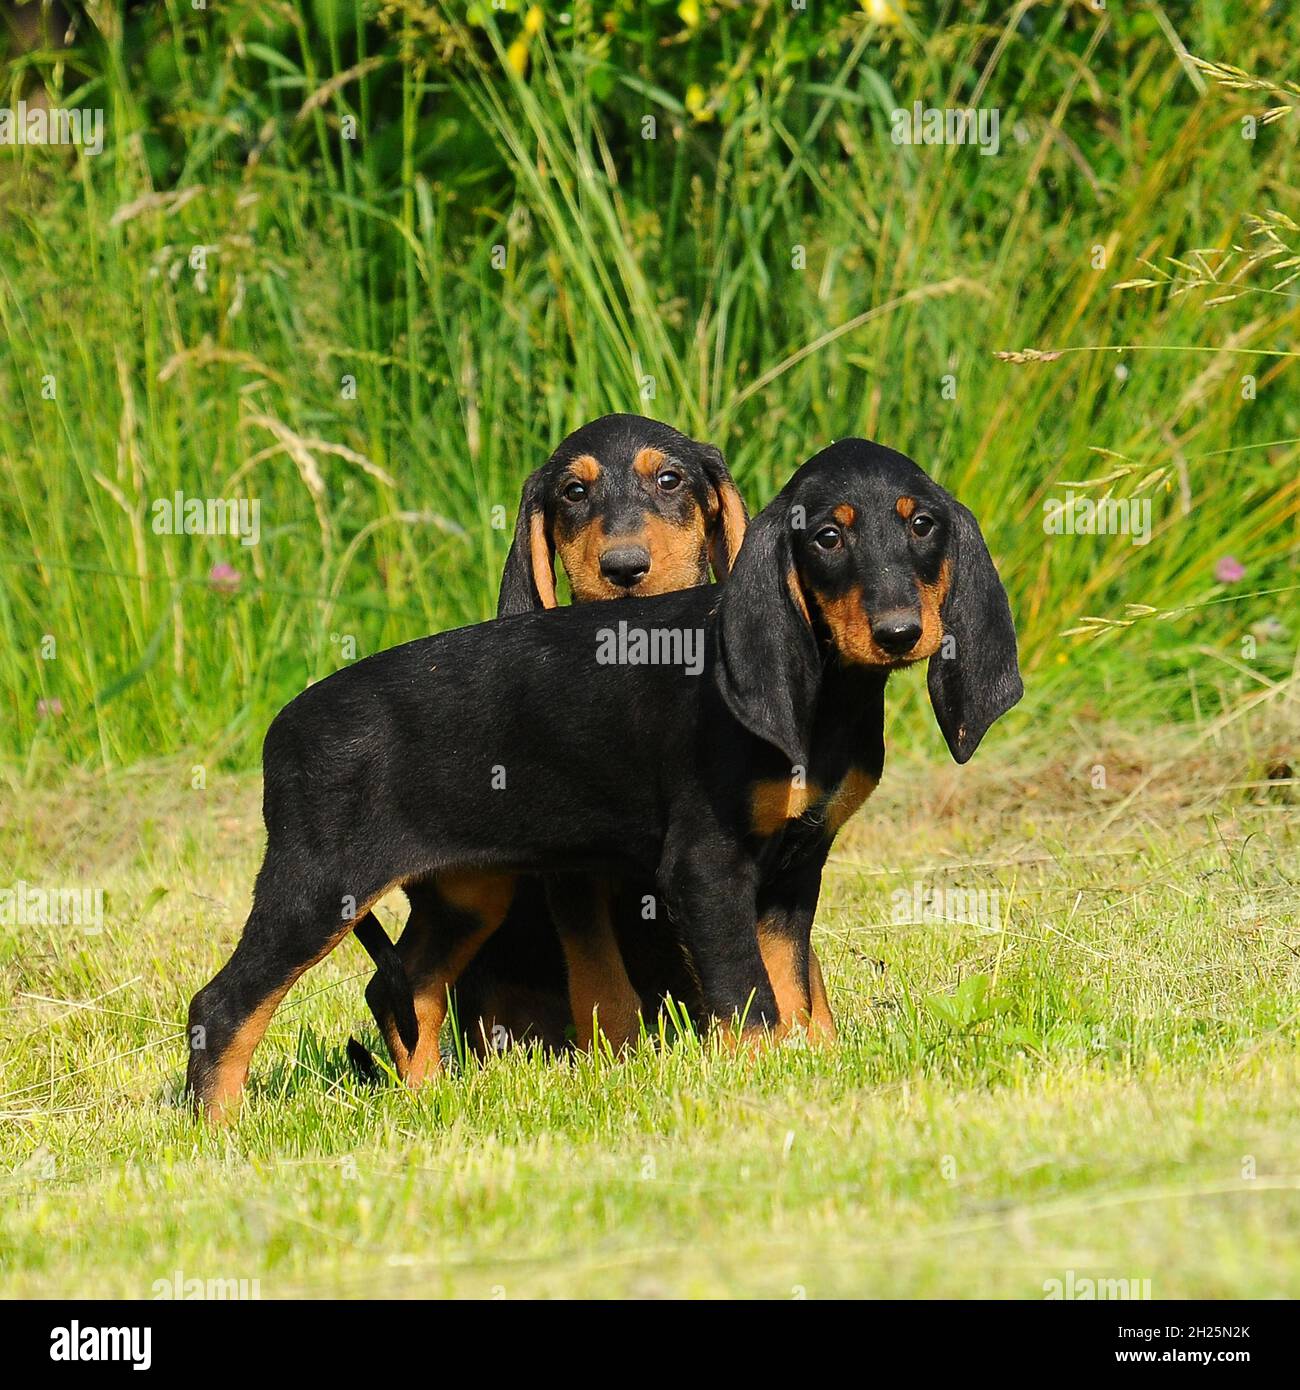 Segugio Italiano puppies on grass Stock Photo